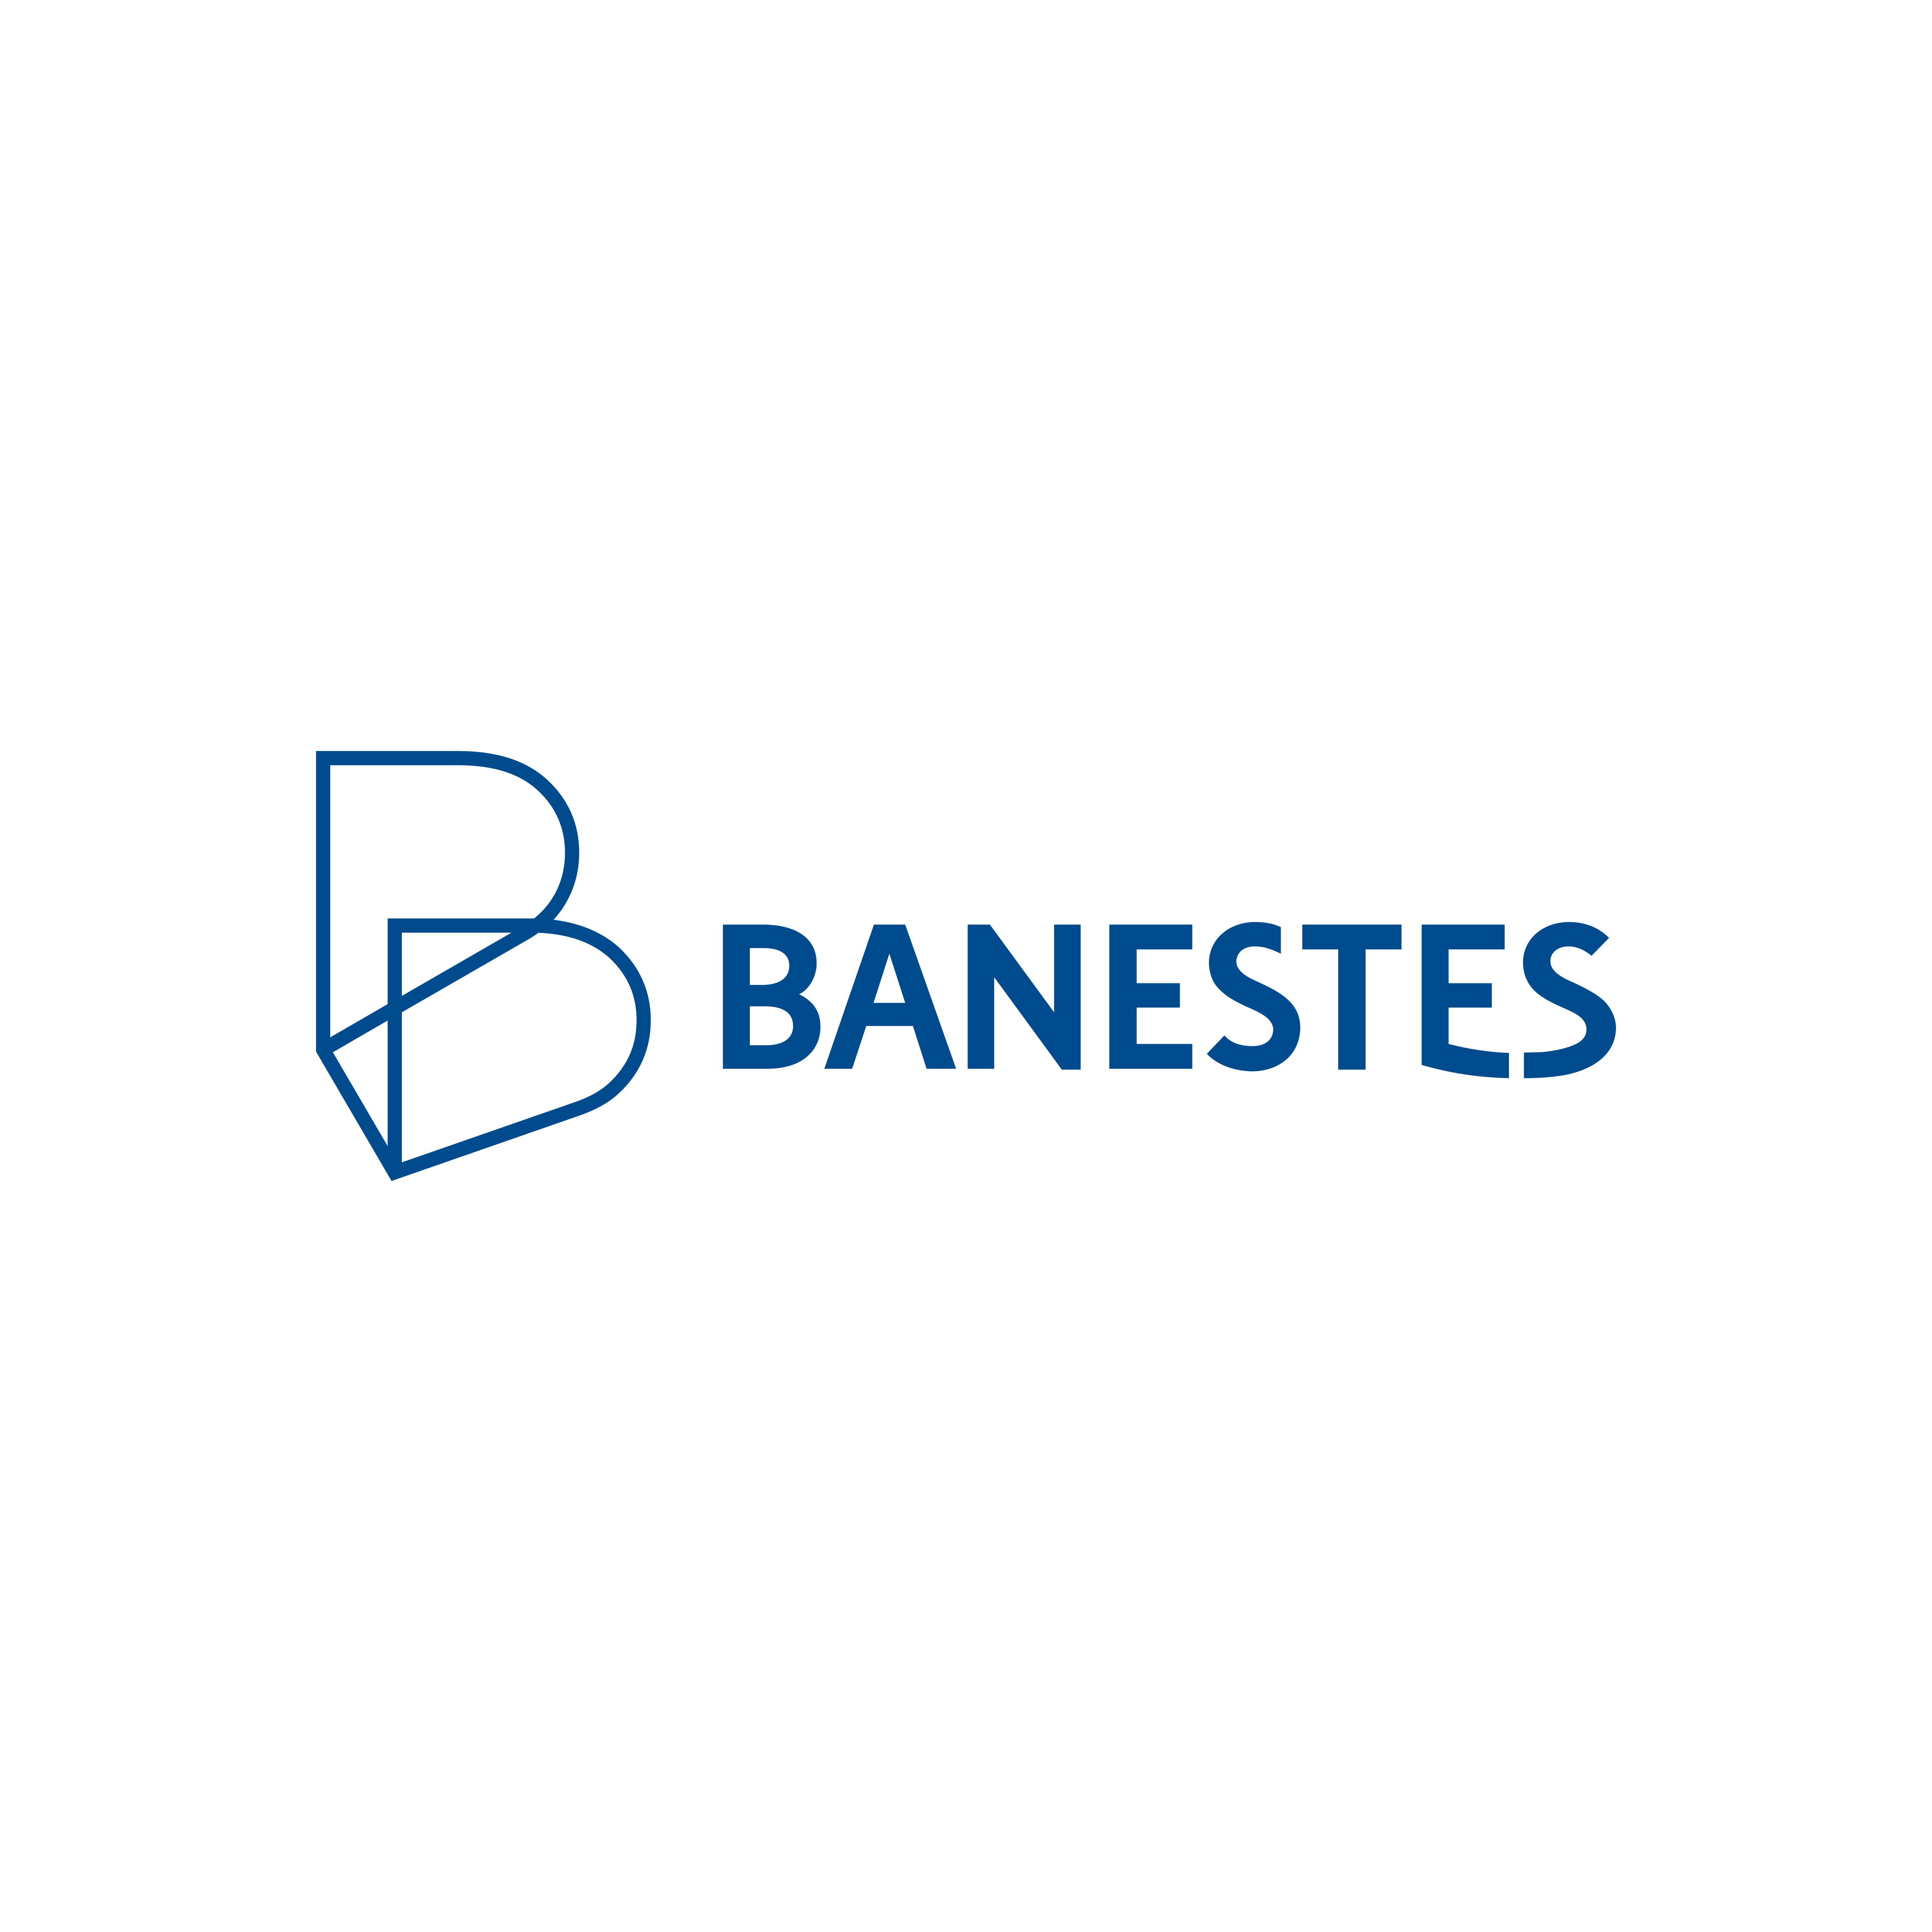 Banestes Logo PNG.